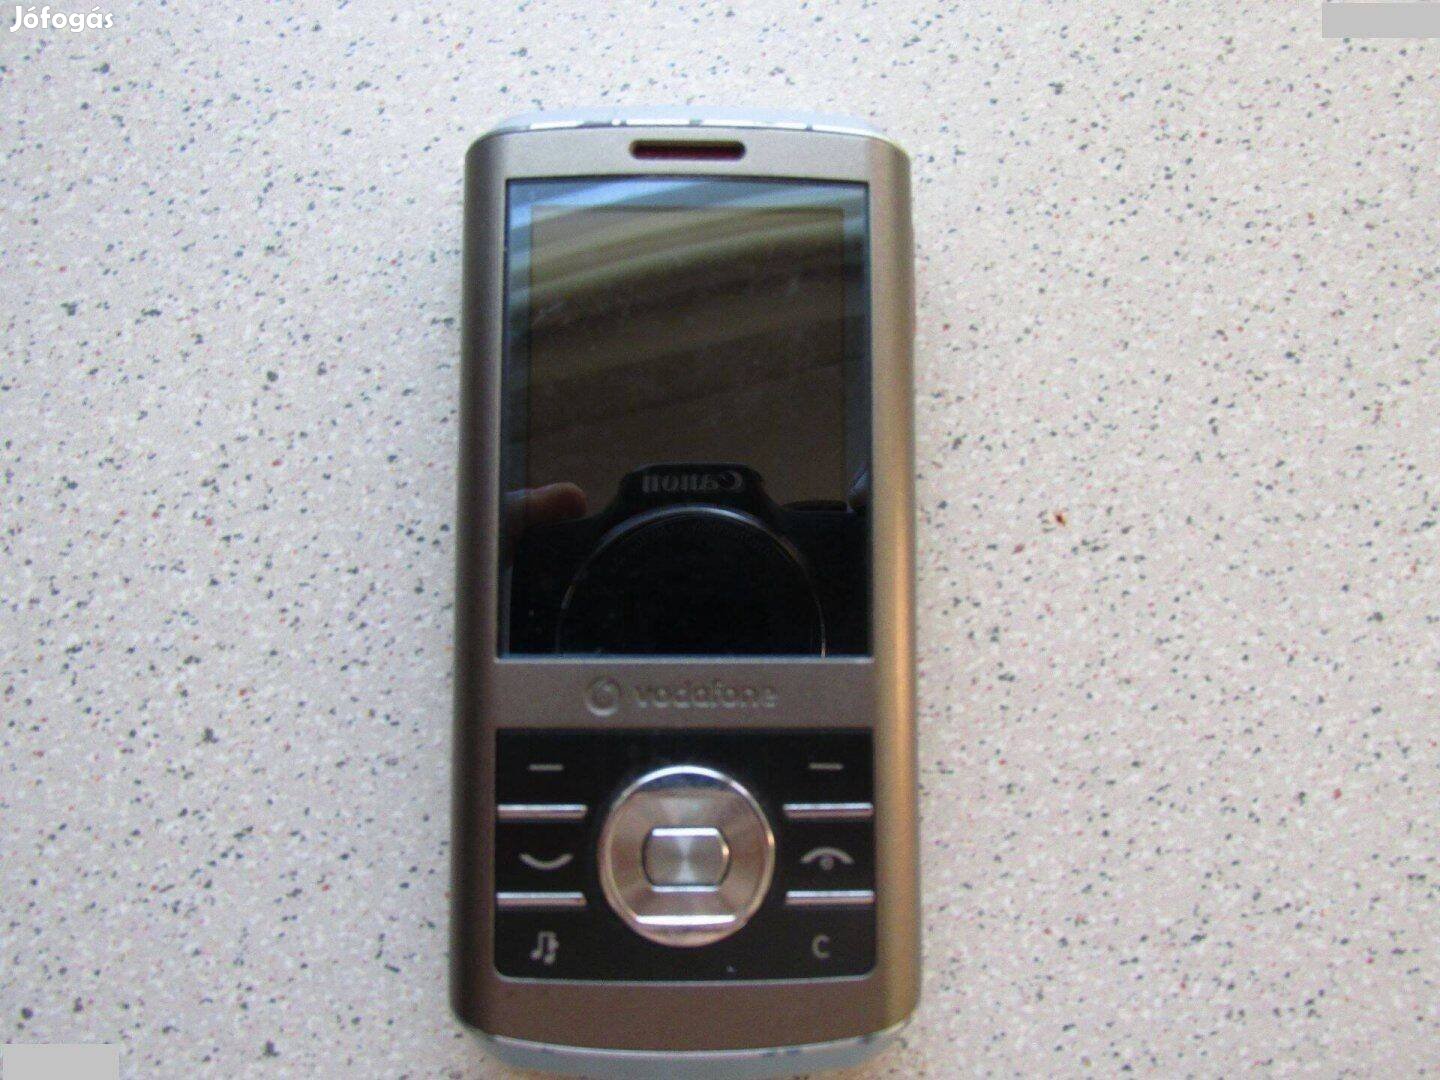 Sony Ericsson mobiltelefon Kamera Handy Zenelejátzó Email Mobil Telefo